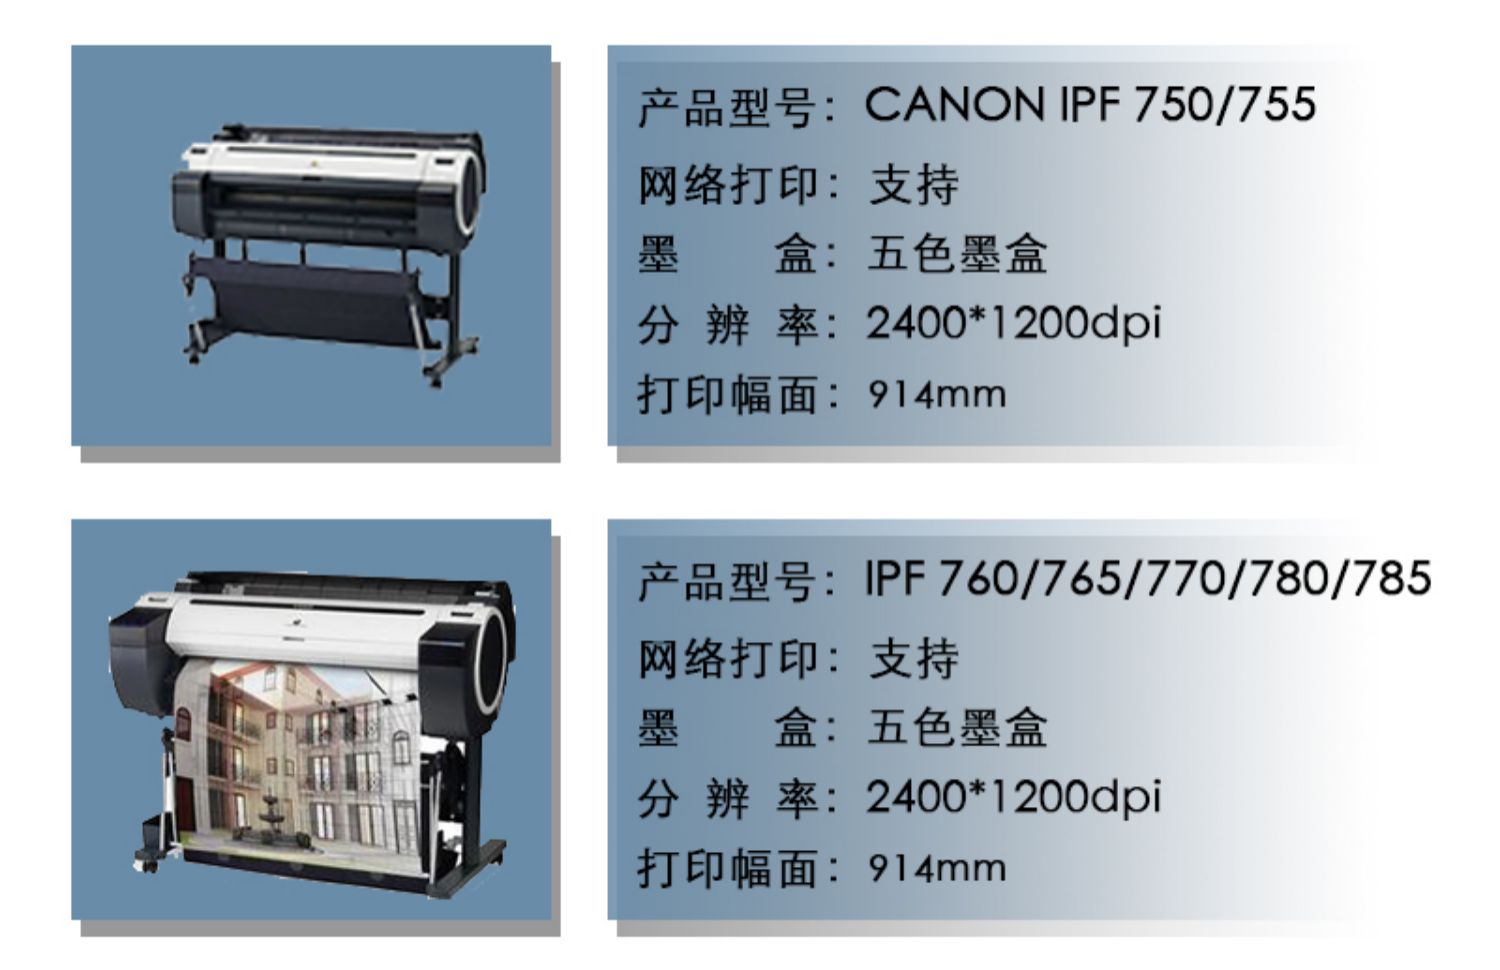 打印机 大幅面 图纸 写真 喷墨 多功能 佳能IPF7706